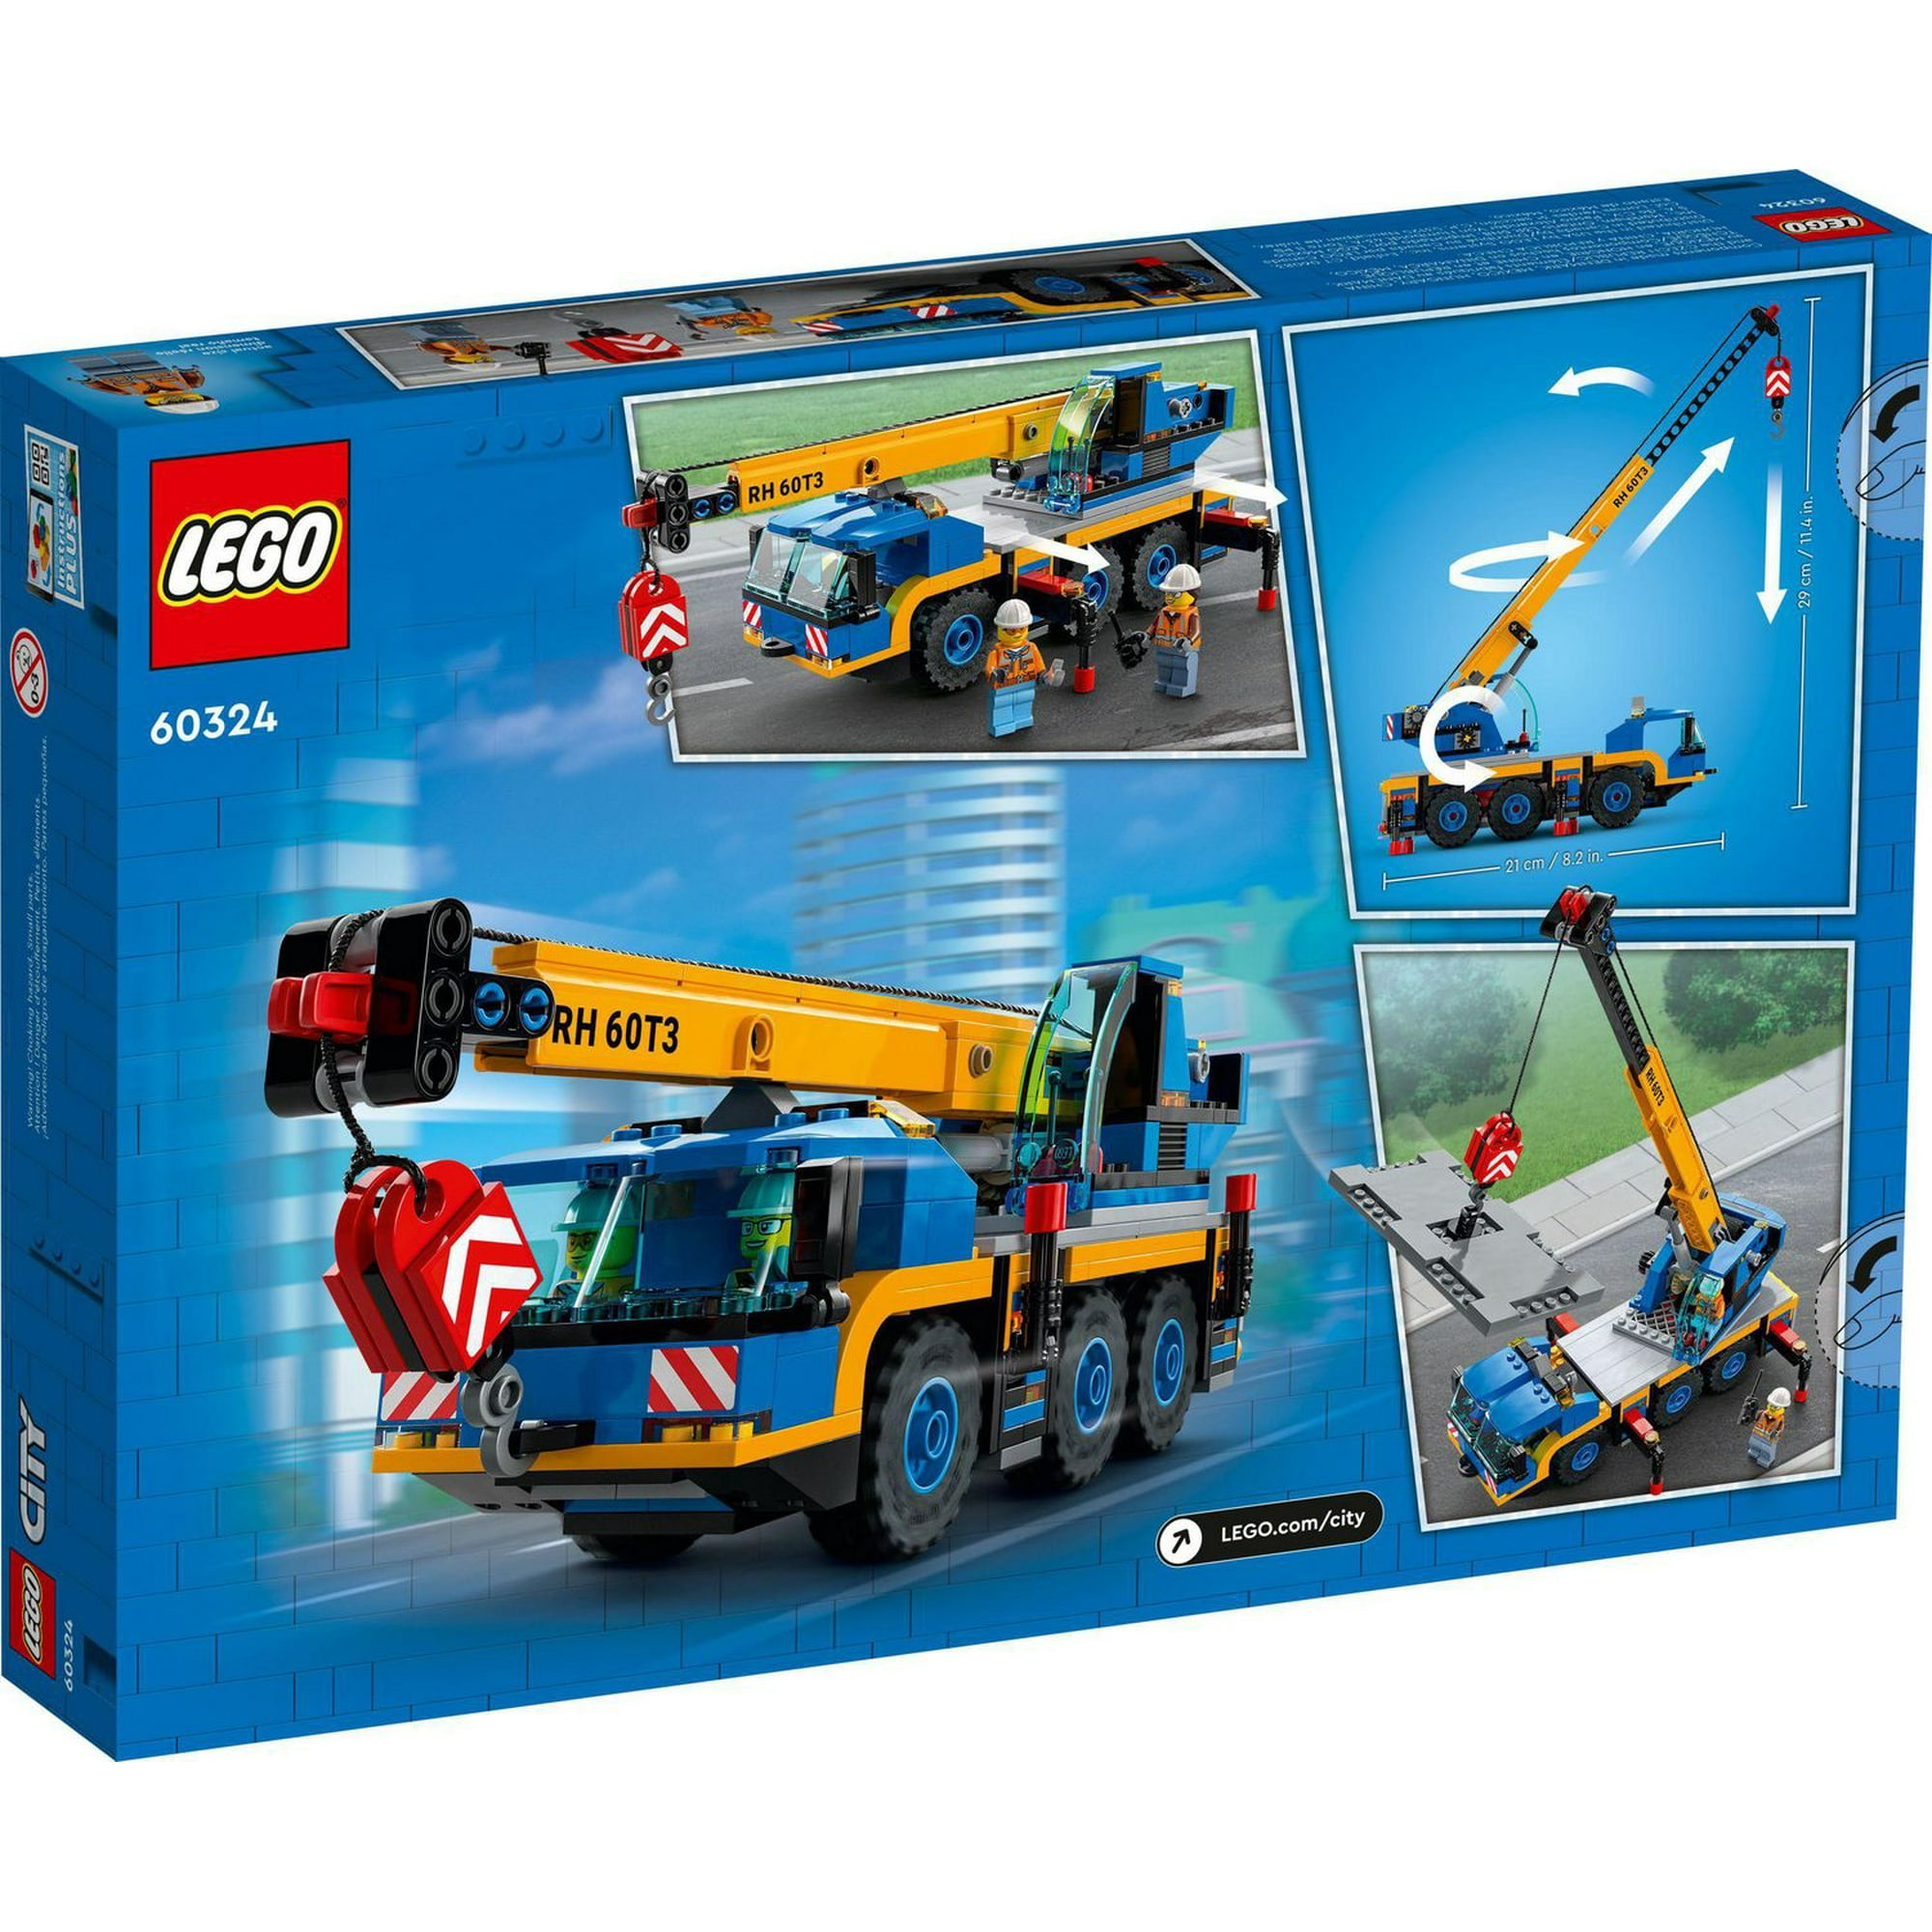 LEGO City Mobile Crane 60324 Toy Building Kit (340 Pieces)